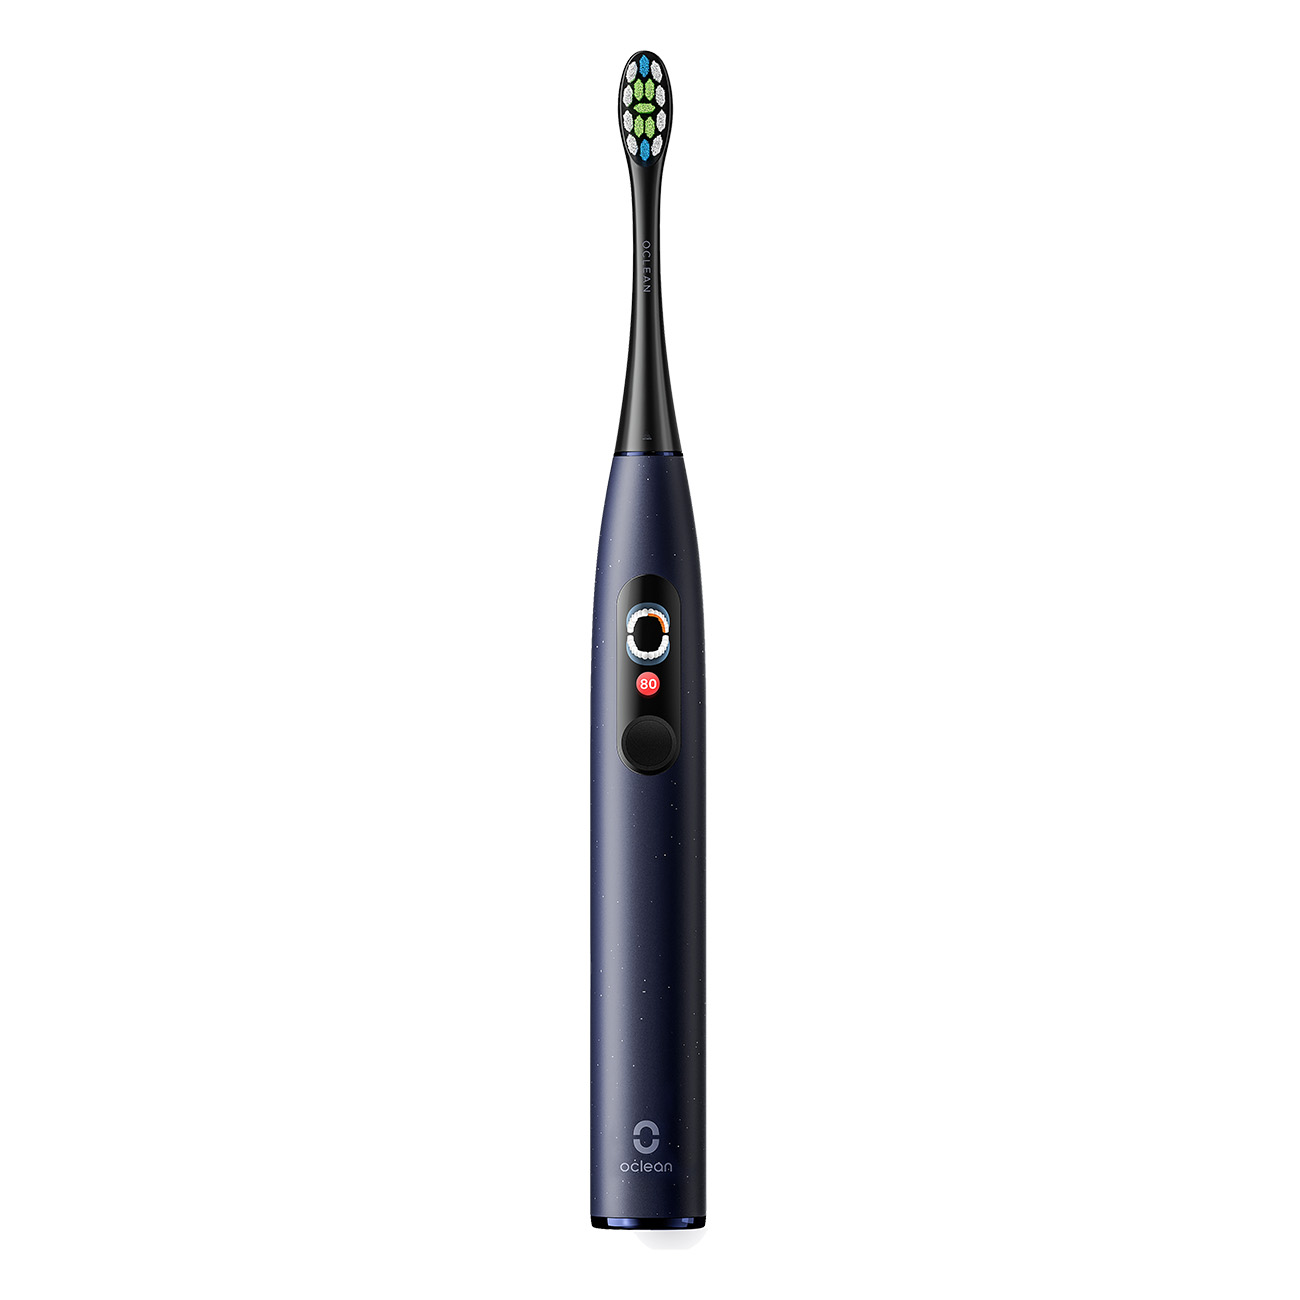 Oclean Electric Toothbrush X Pro Digital blau | Elektrische Zahnb?rste | Ladeanzeige | Betriebskontrollleuchte | Zeitschaltuhr | Andruckkontrolle von Oclean